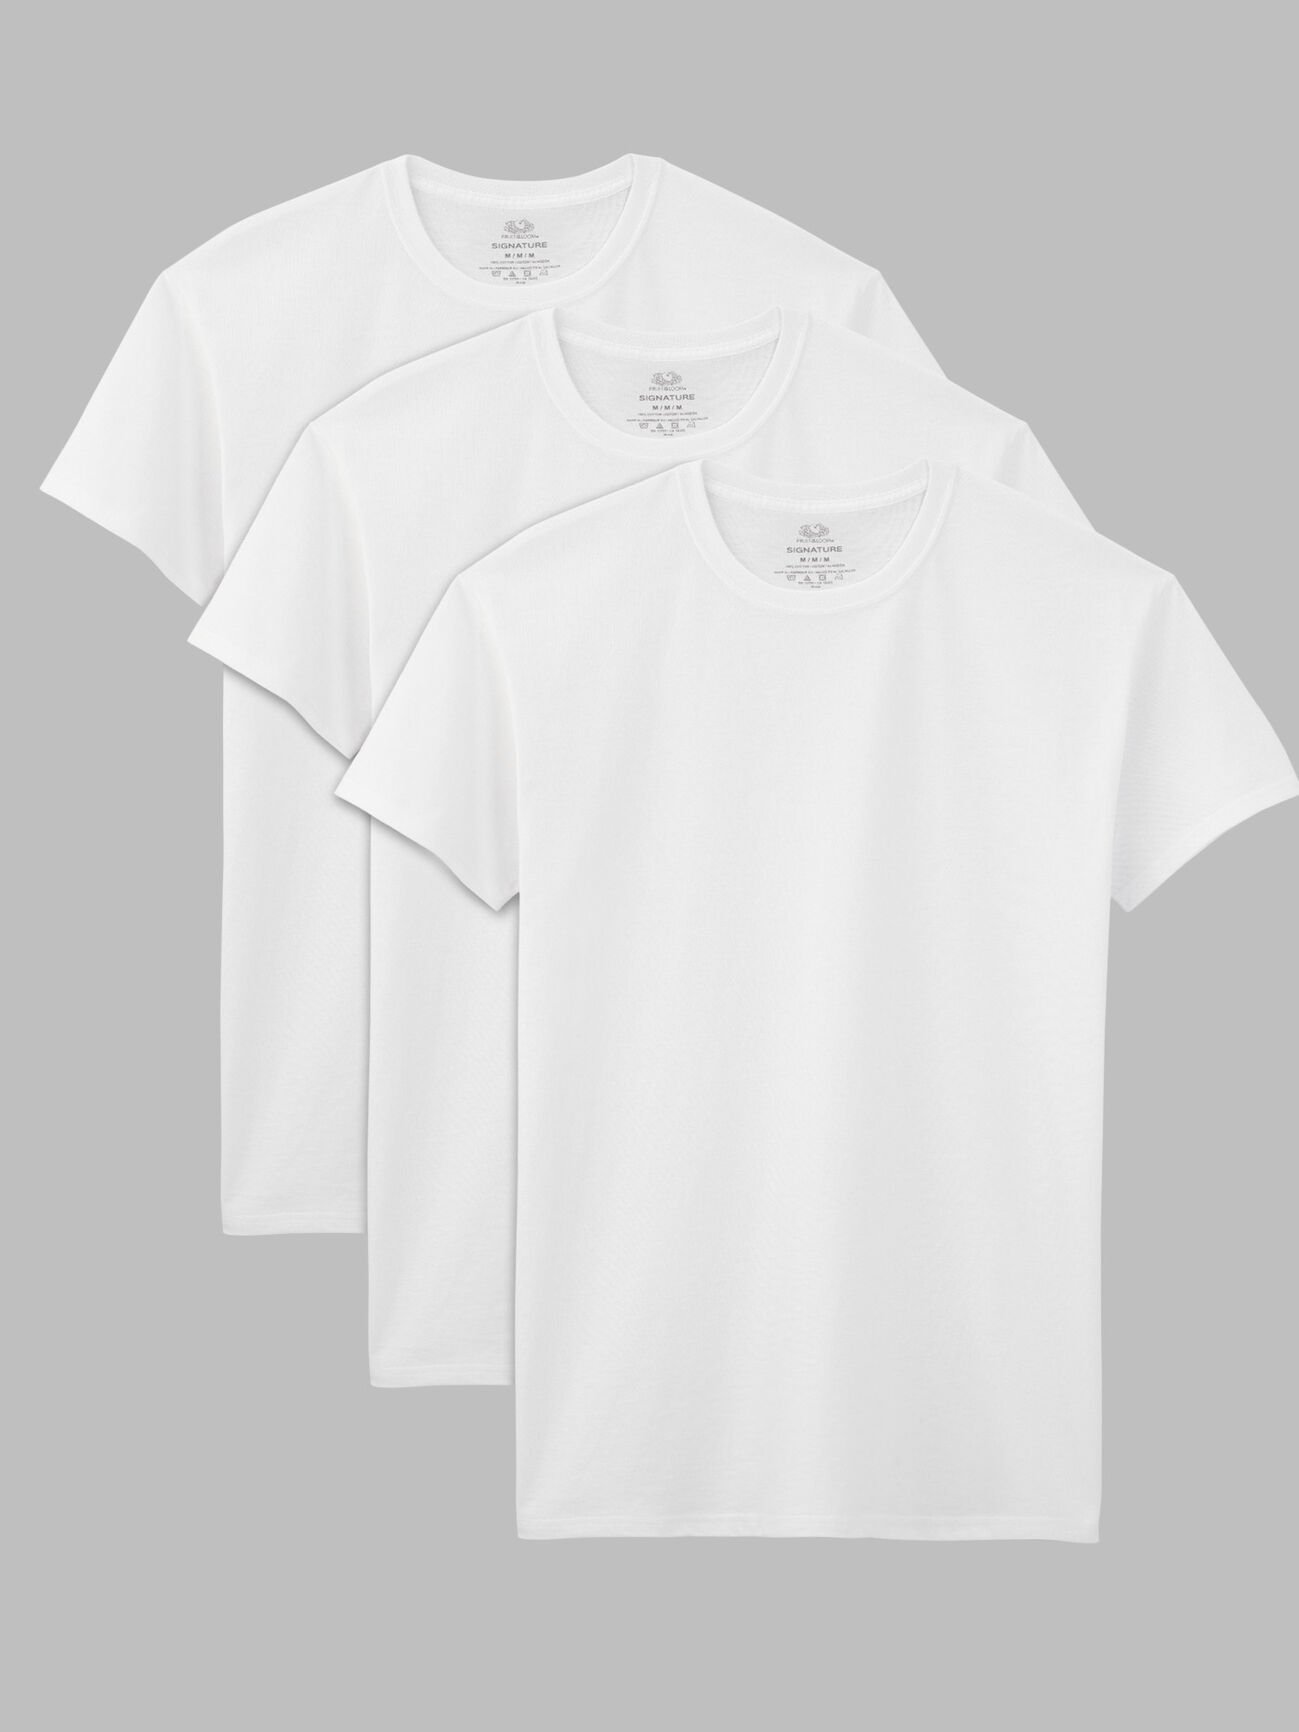 Men's Short Sleeve Crew T-Shirt, White 3 Pack White